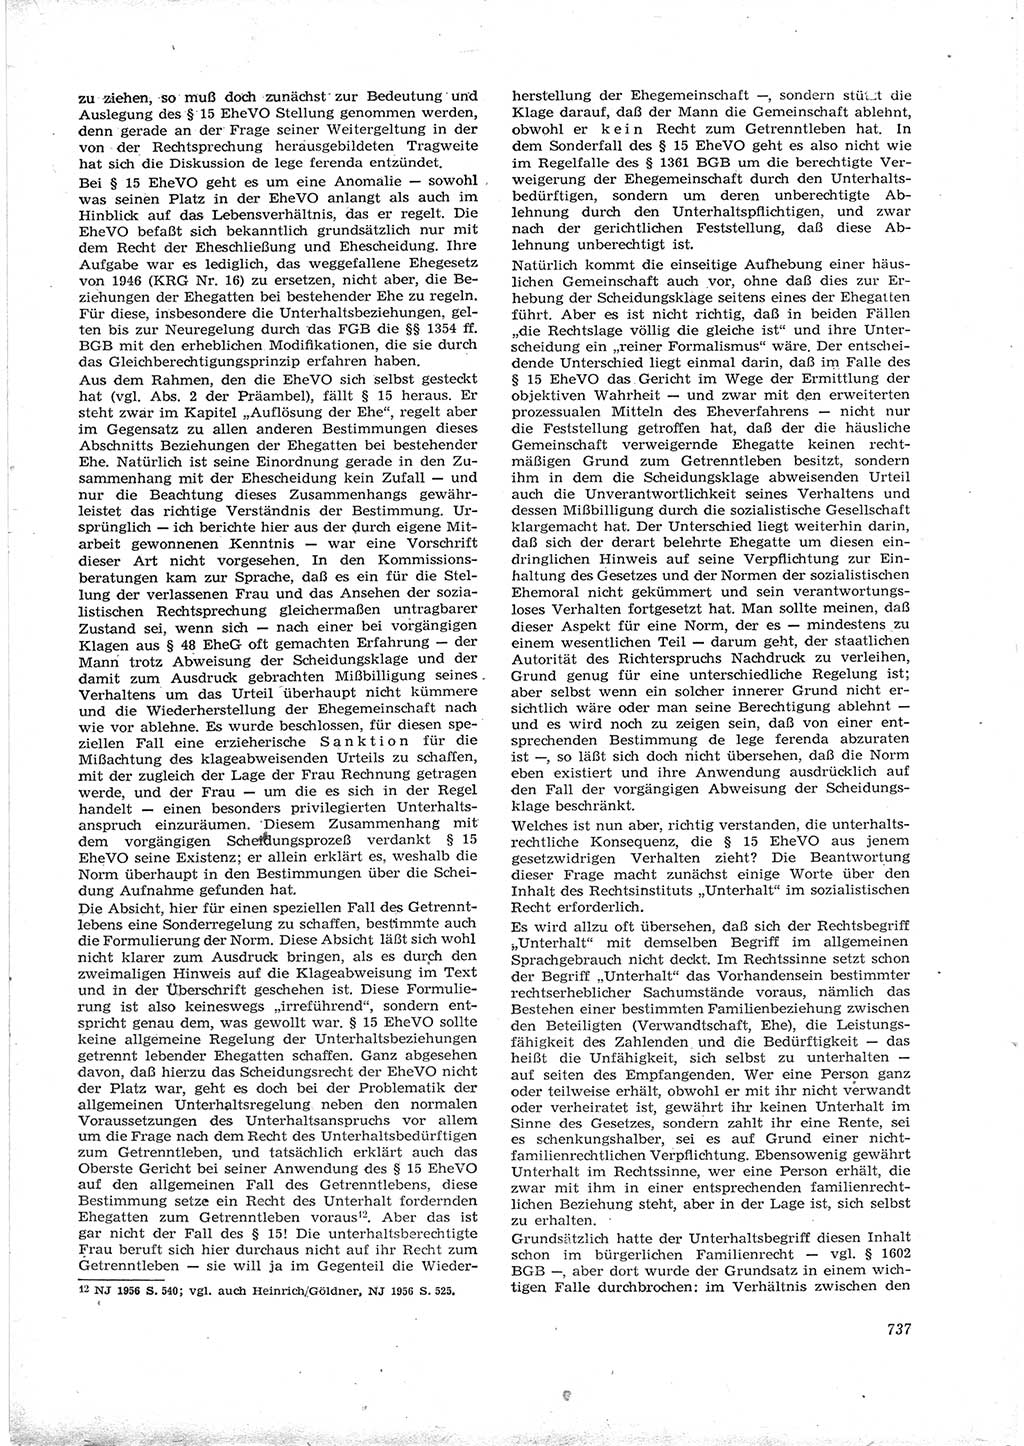 Neue Justiz (NJ), Zeitschrift für Recht und Rechtswissenschaft [Deutsche Demokratische Republik (DDR)], 16. Jahrgang 1962, Seite 737 (NJ DDR 1962, S. 737)